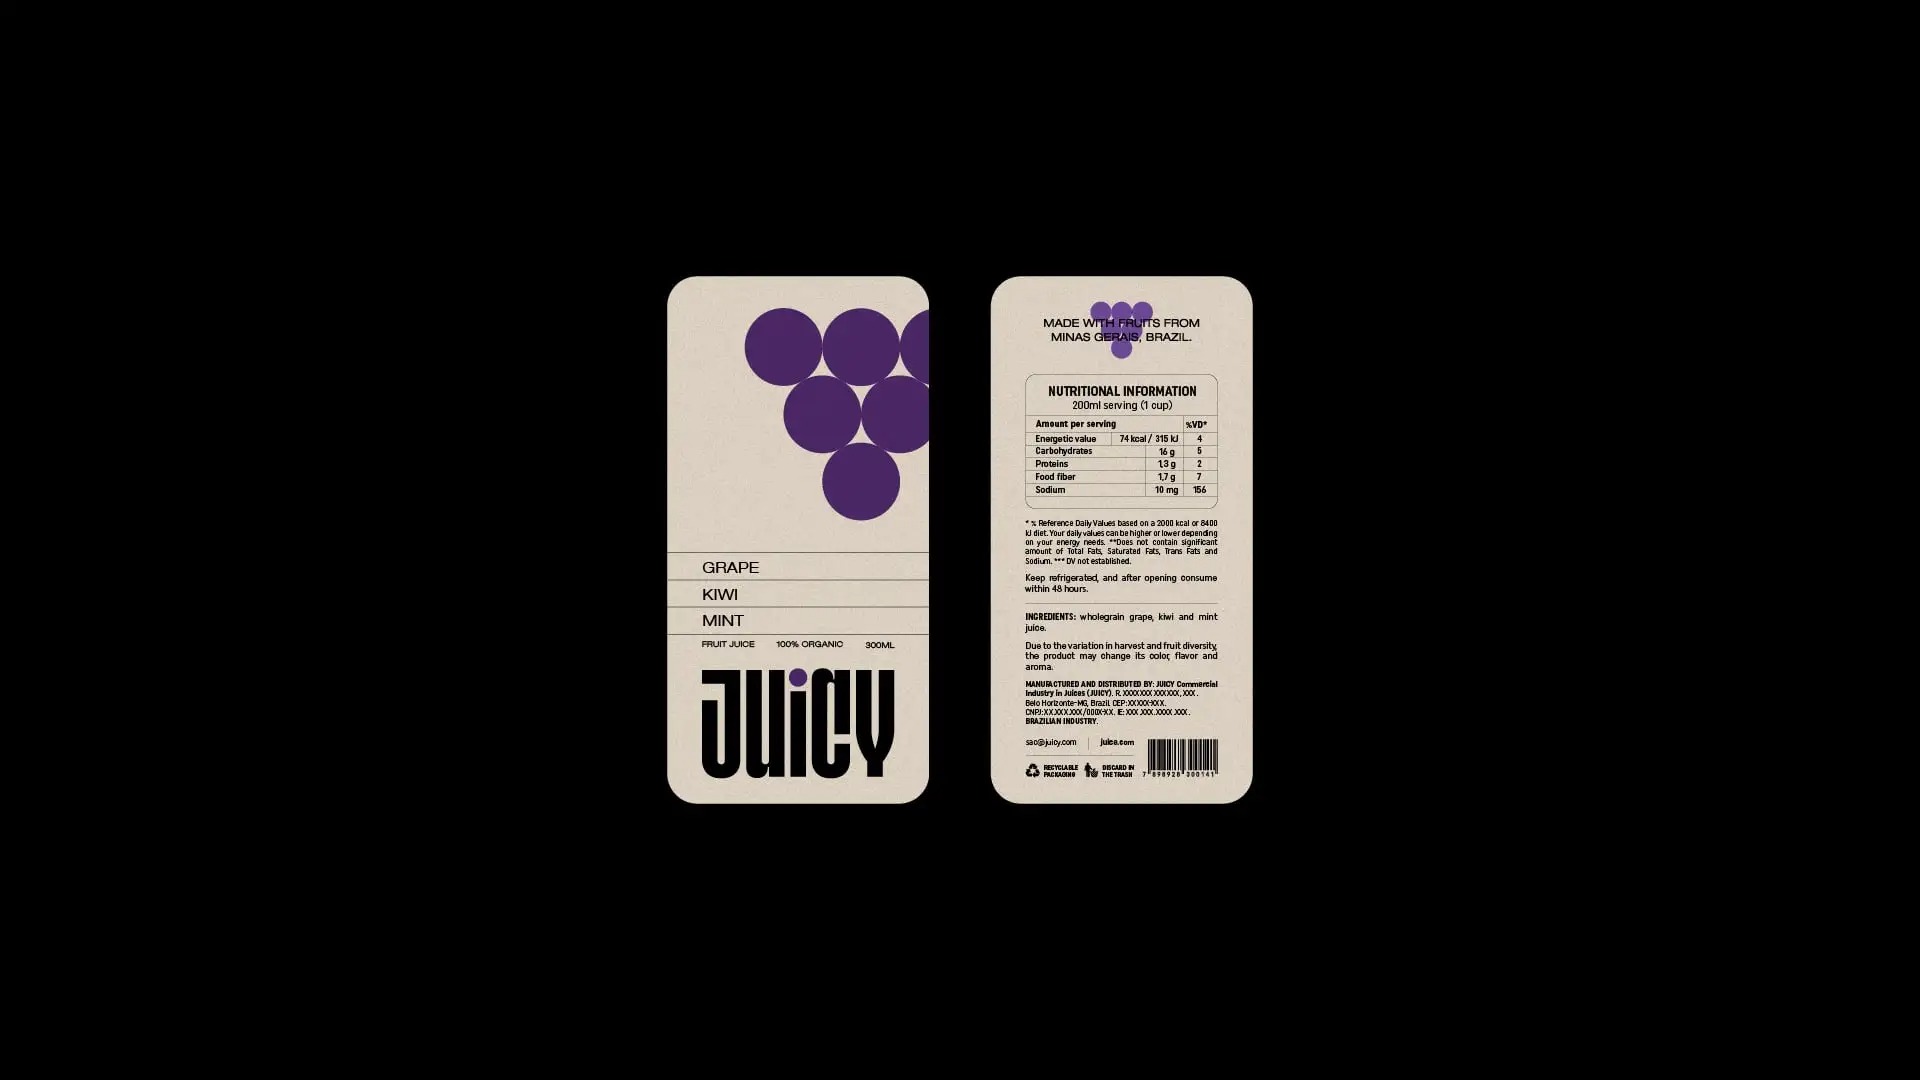 Juicy天然果汁品牌包装设计